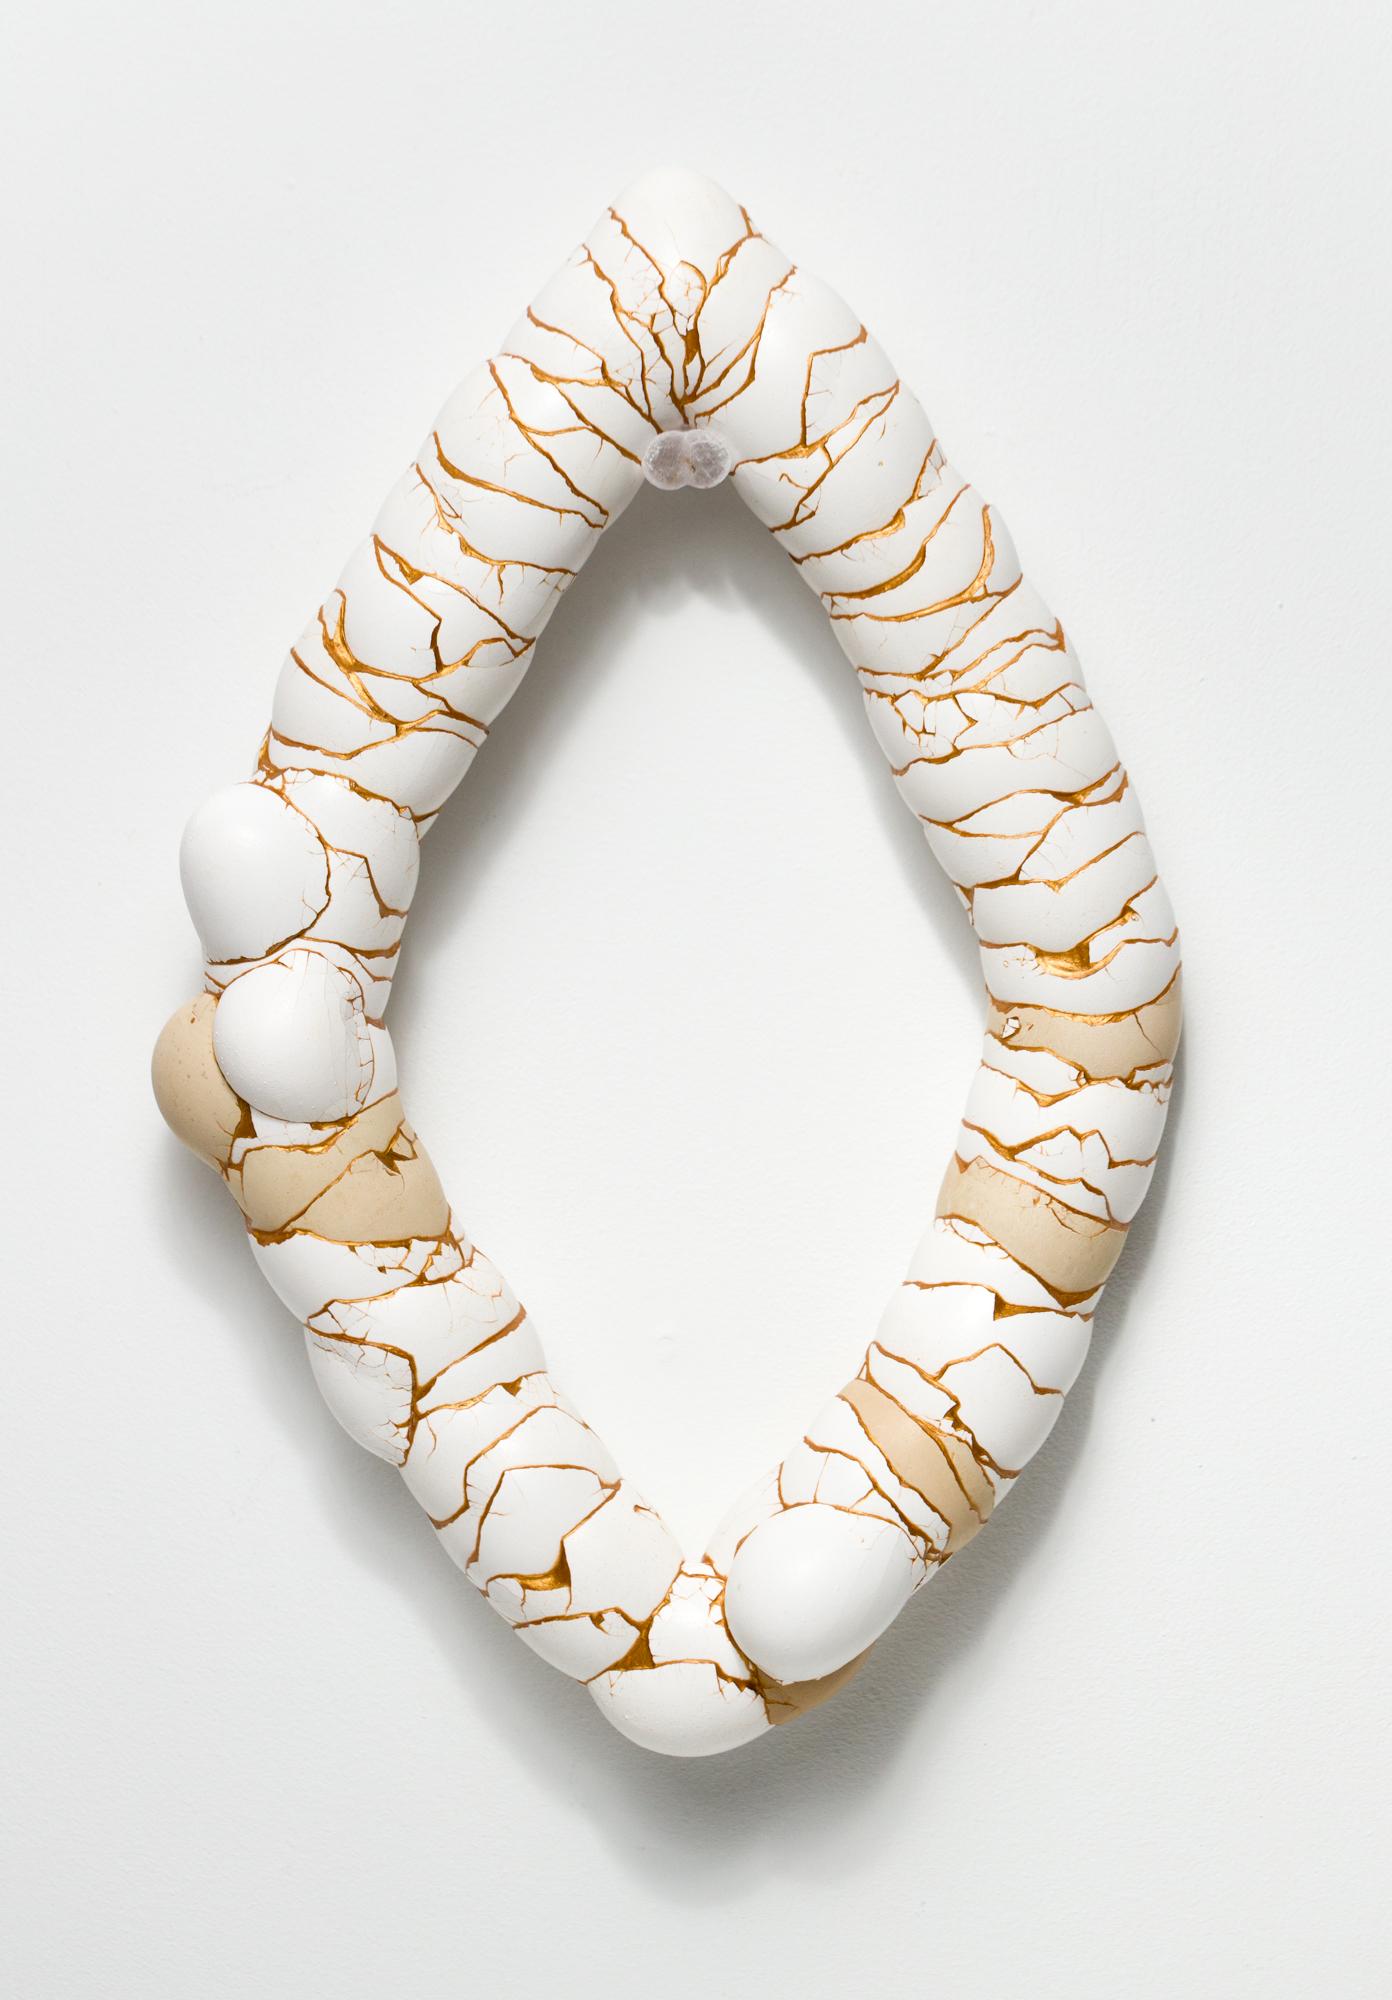 „Yoni“, rekonstruierte Eierassemblage, Hängeskulptur – Mixed Media Art von Katie VanVliet